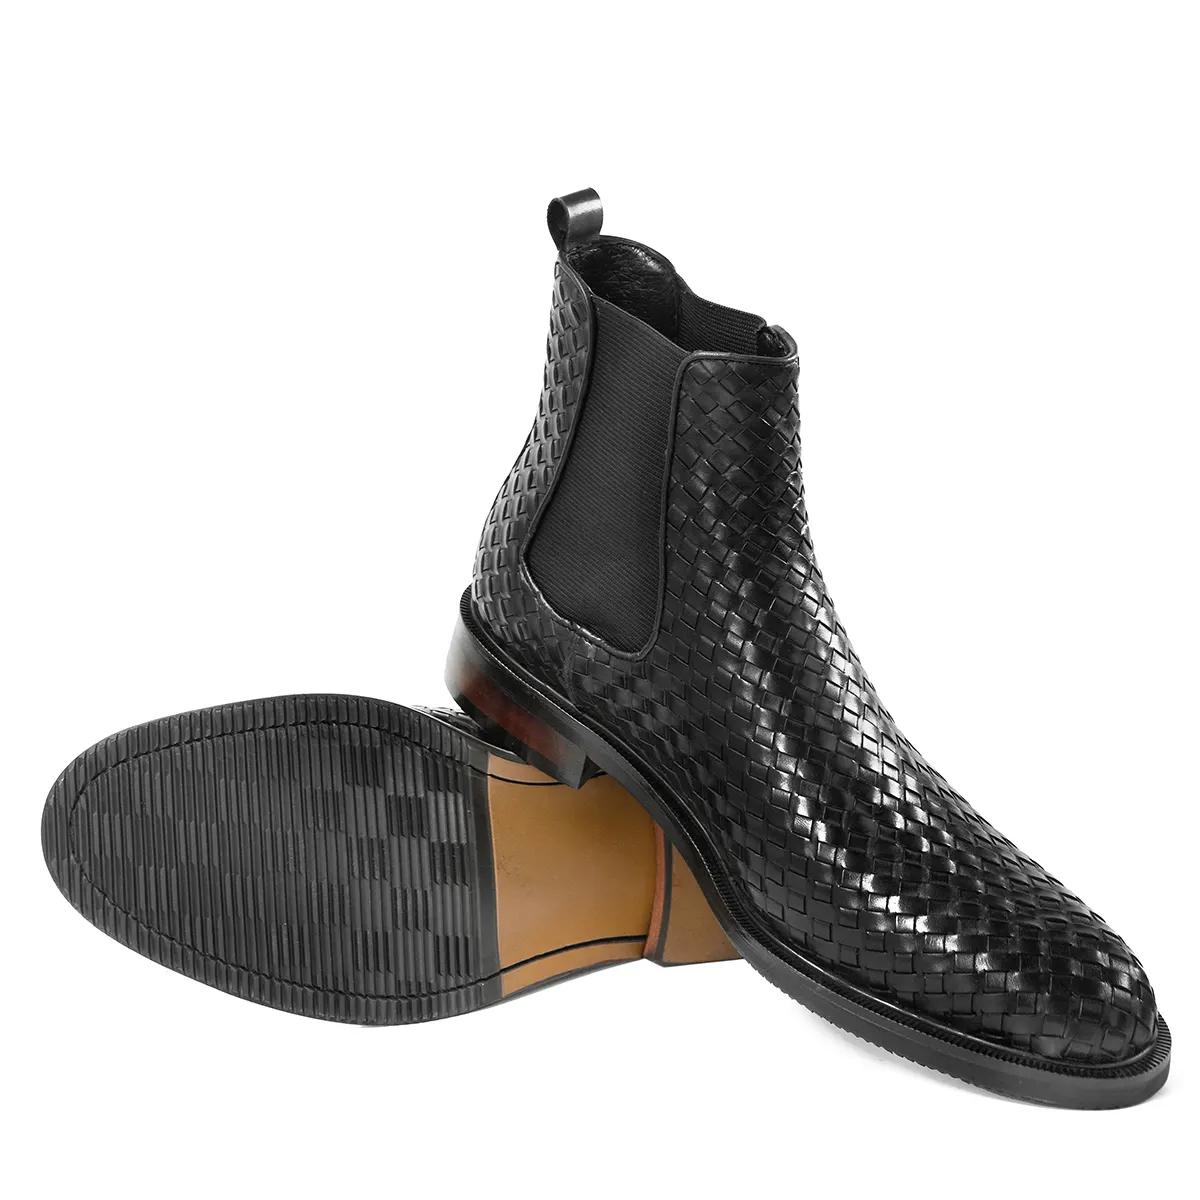 Hanmce รองเท้าบูทเชลซีสีดำ,รองเท้าบูทหุ้มข้อหรูหราหนังแท้ลายสานสำหรับผู้ชายสำหรับฤดูใบไม้ผลิ/ฤดูหนาว